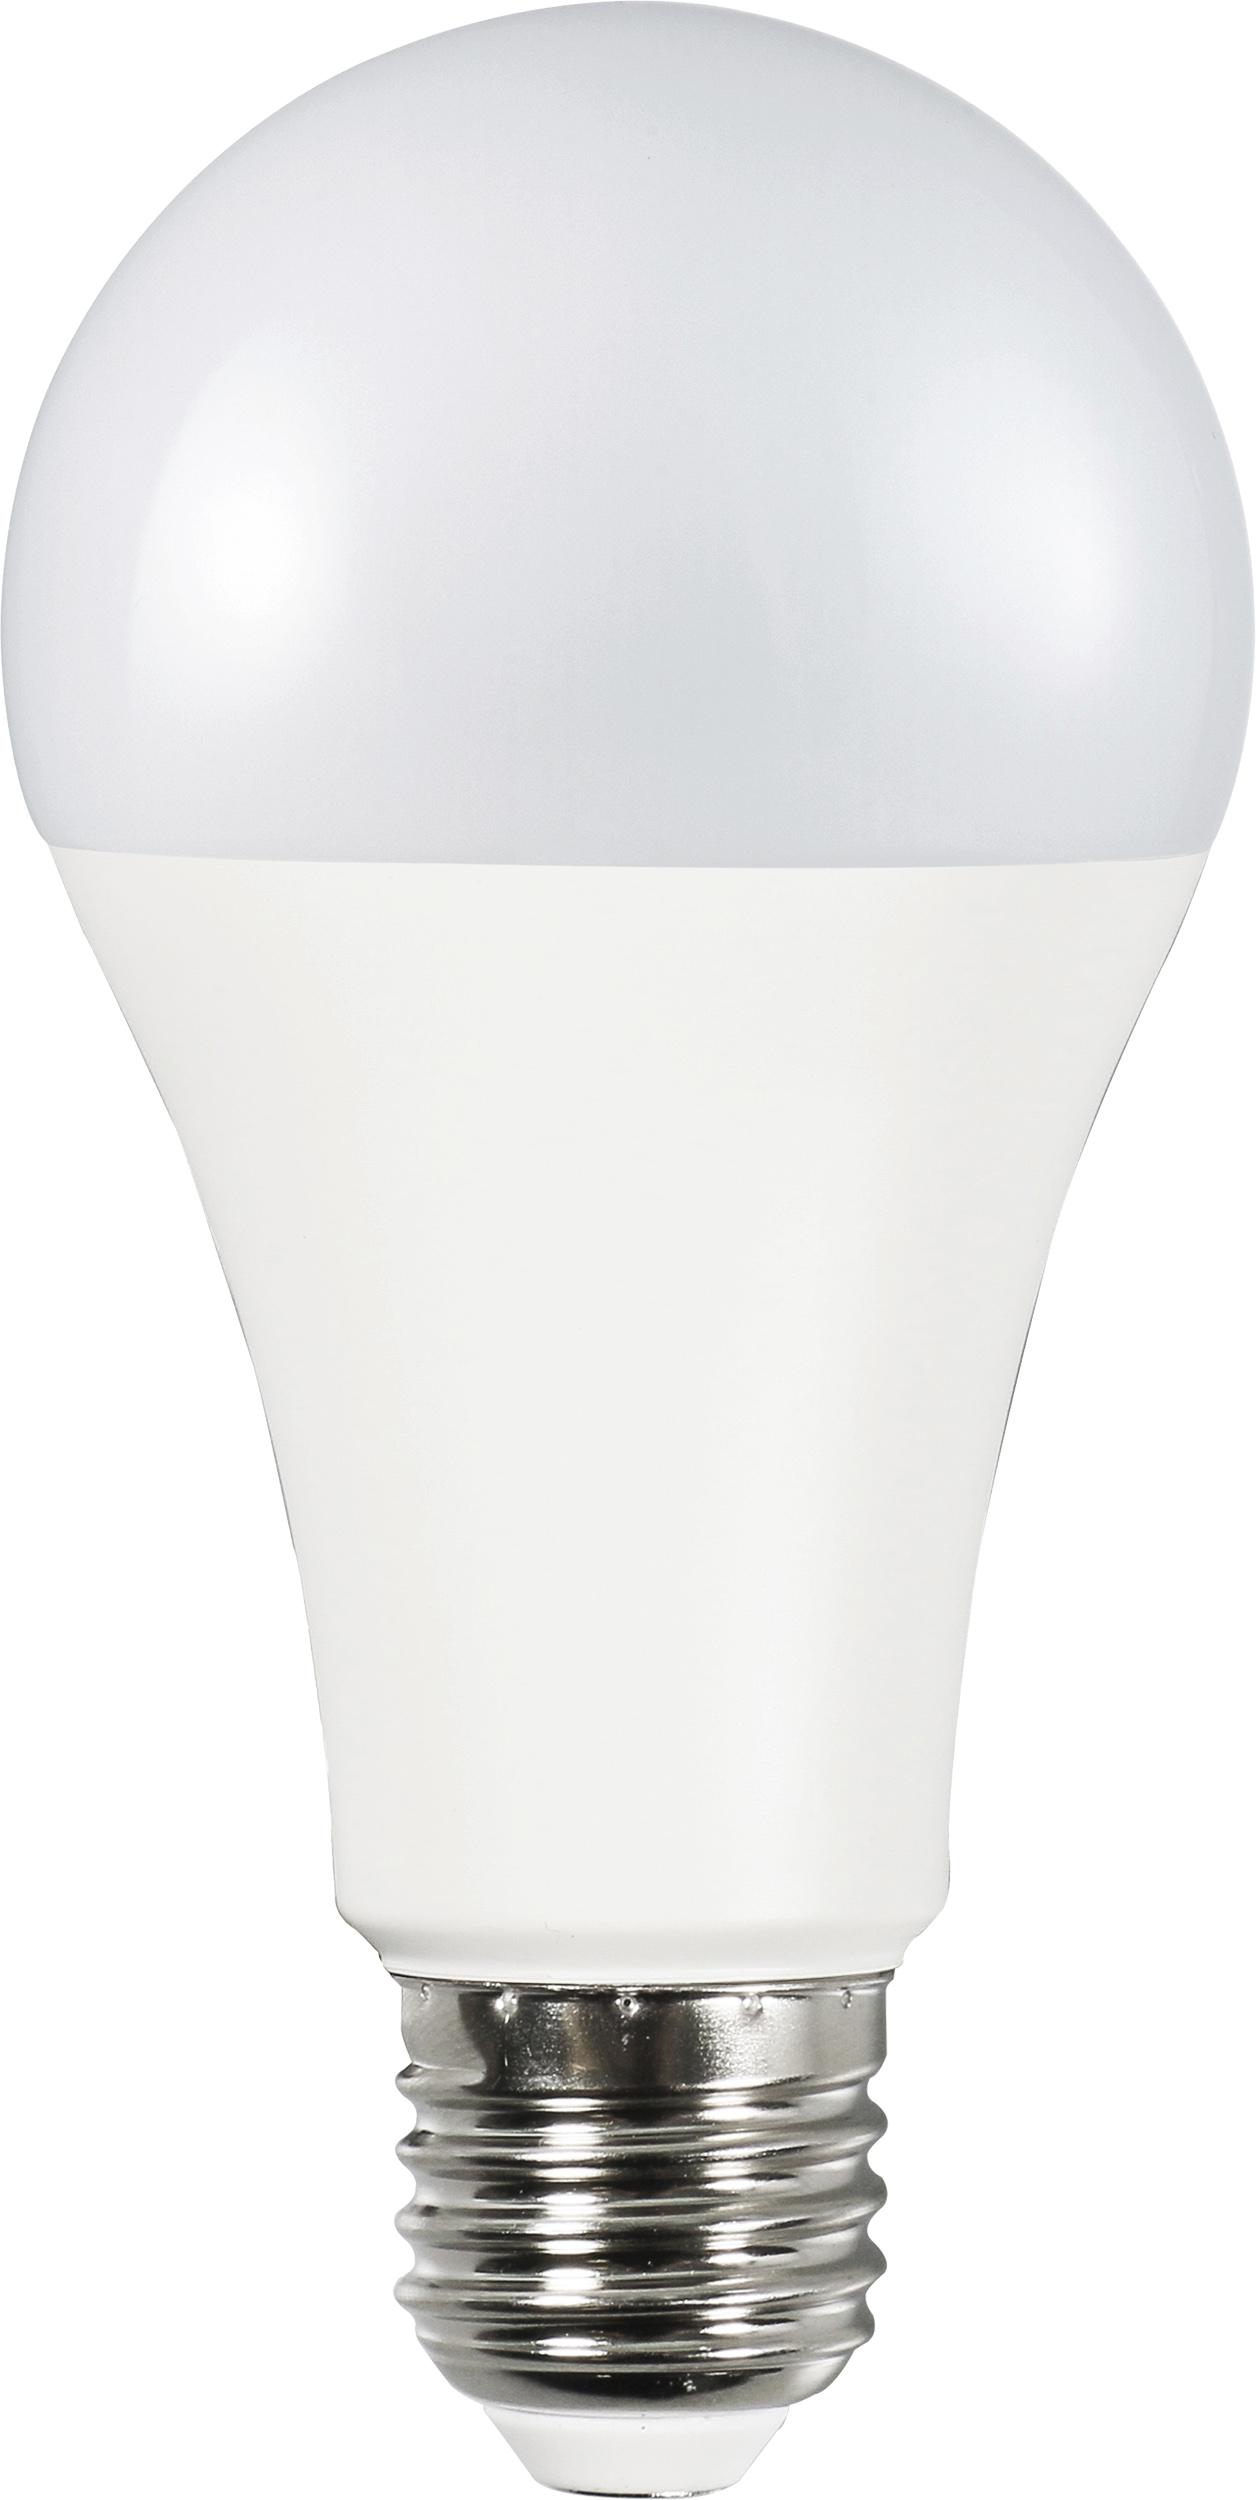 Müller Licht LED Lampen mit warmweißer Lichtfarbe - verschiedene Ausführungen